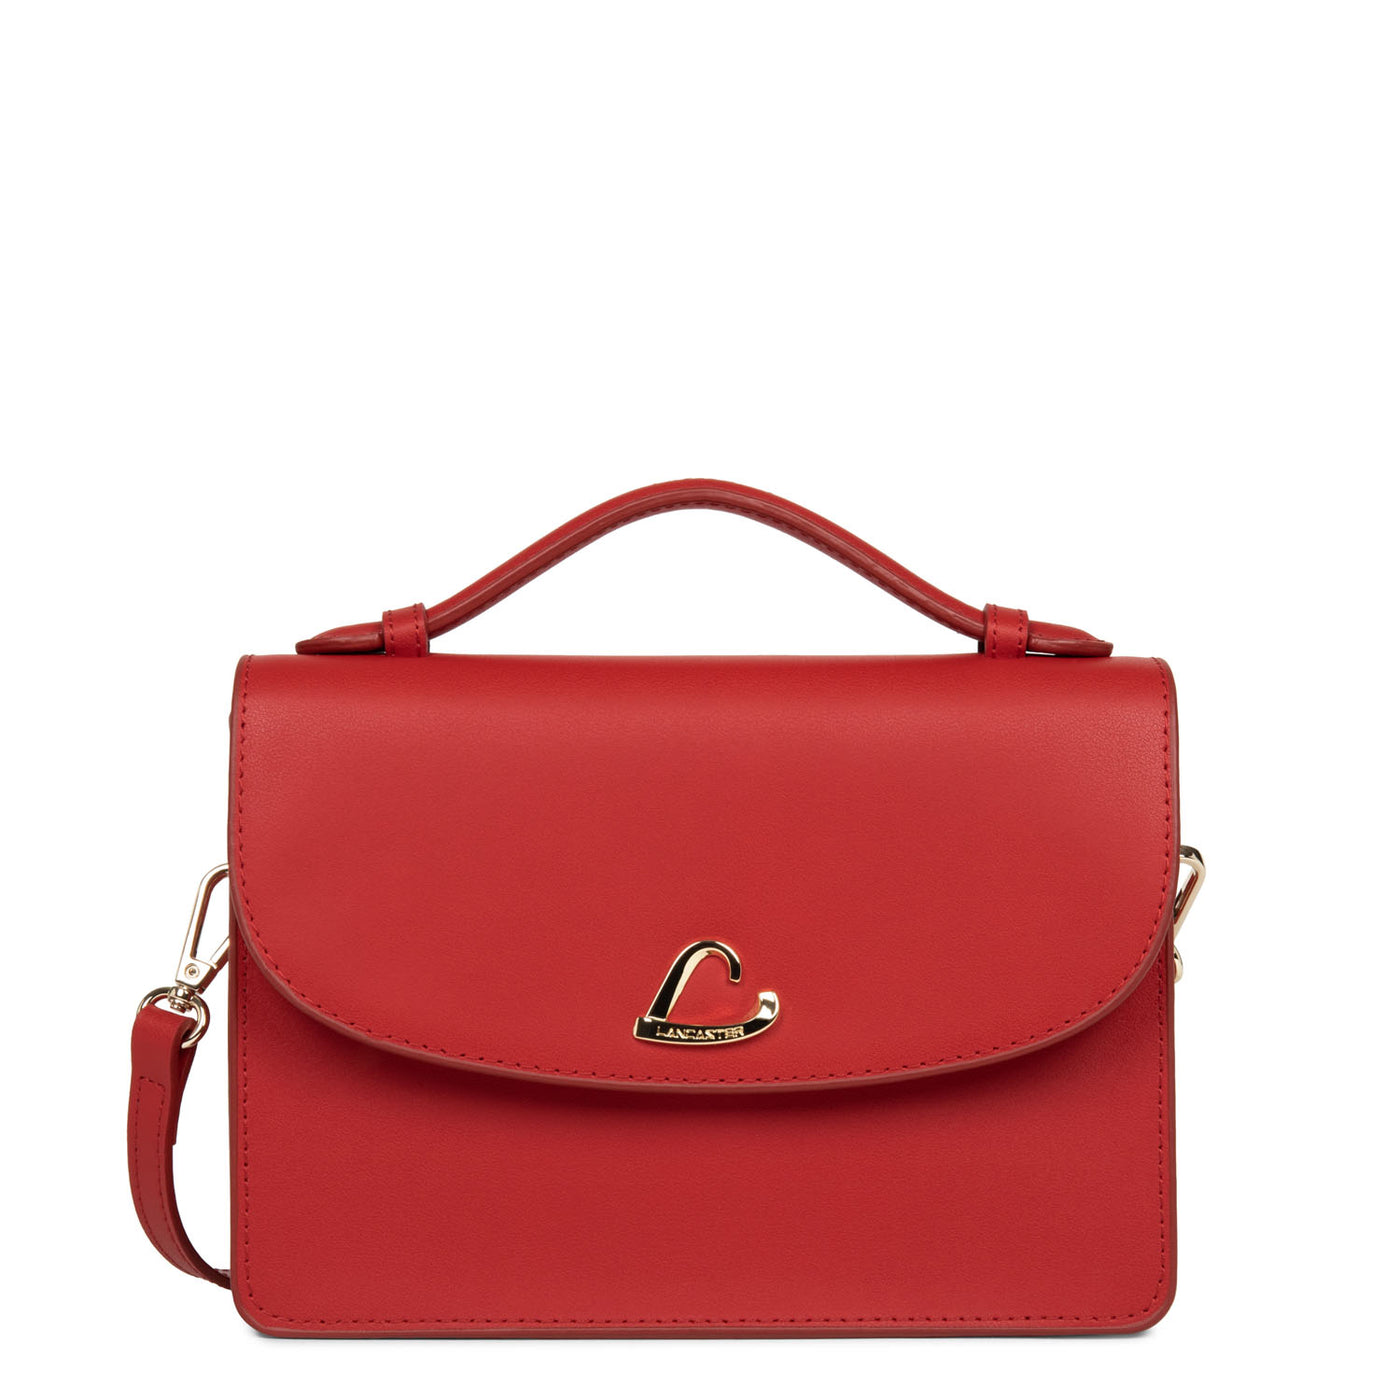 sac à main - city philos #couleur_rouge